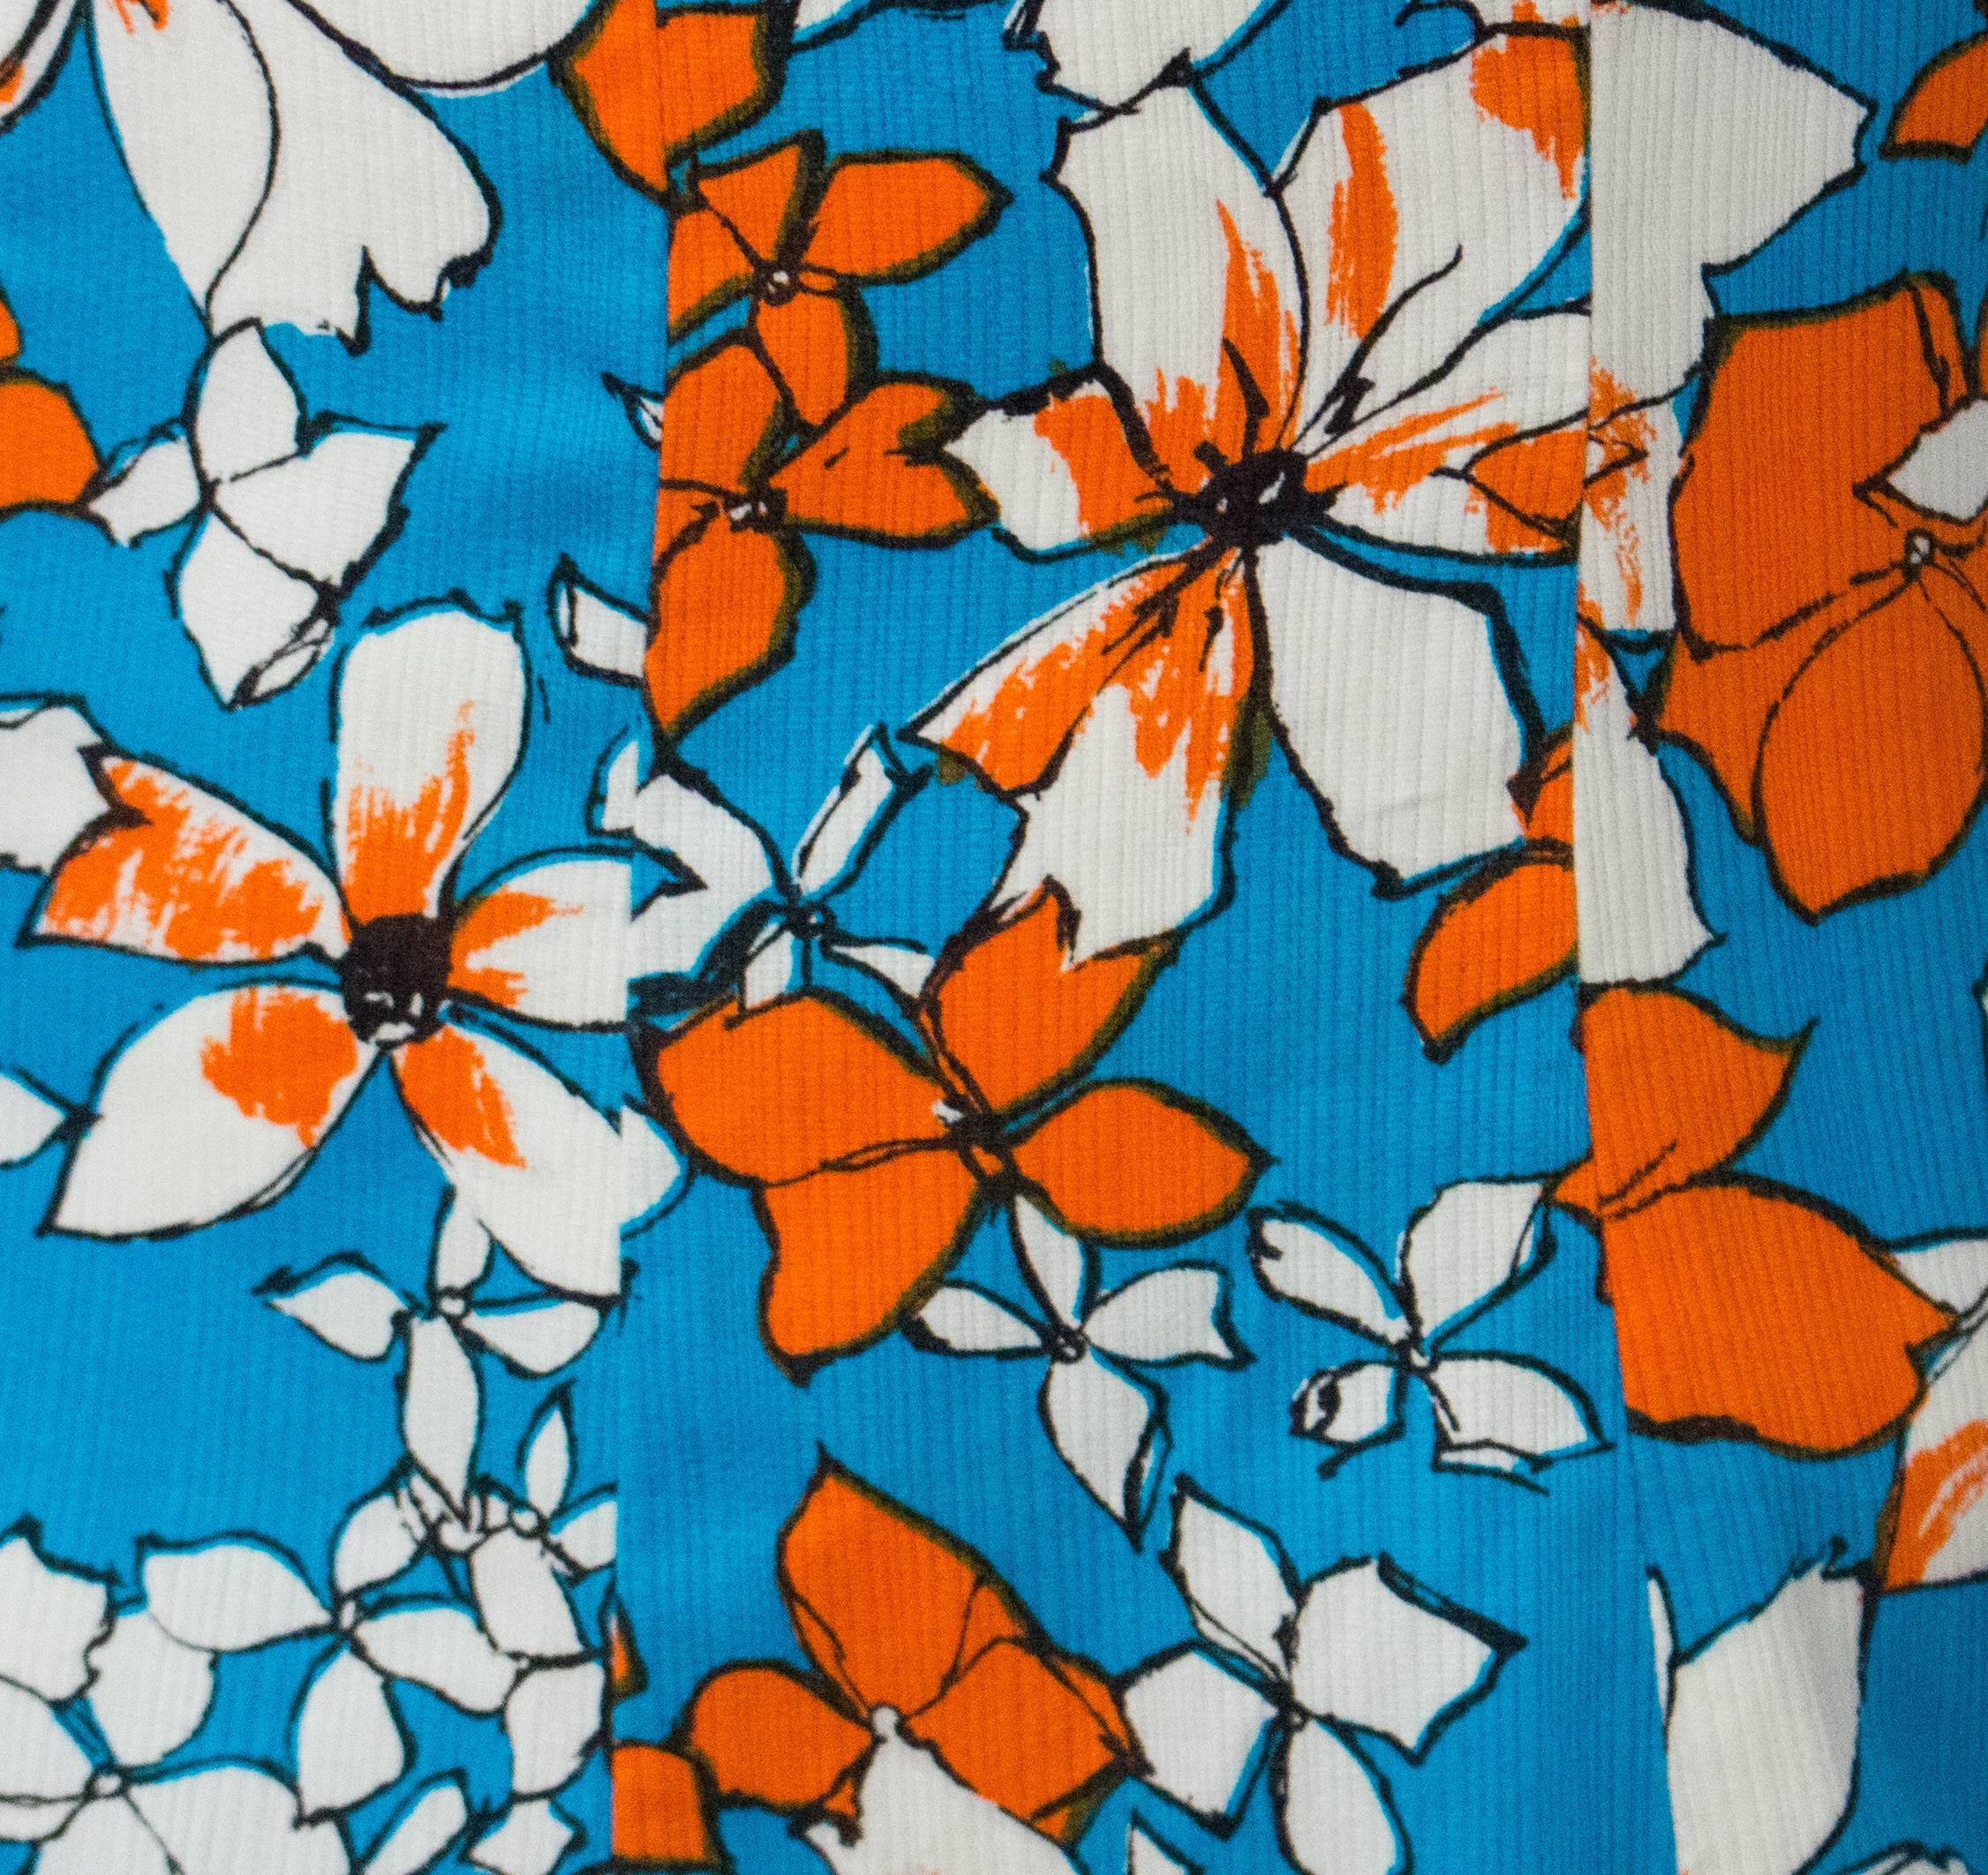 60er Jahre Florales Sommerkleid. Orange und blauer tropischer Blumendruck mit weißem Kontrastkragen. 